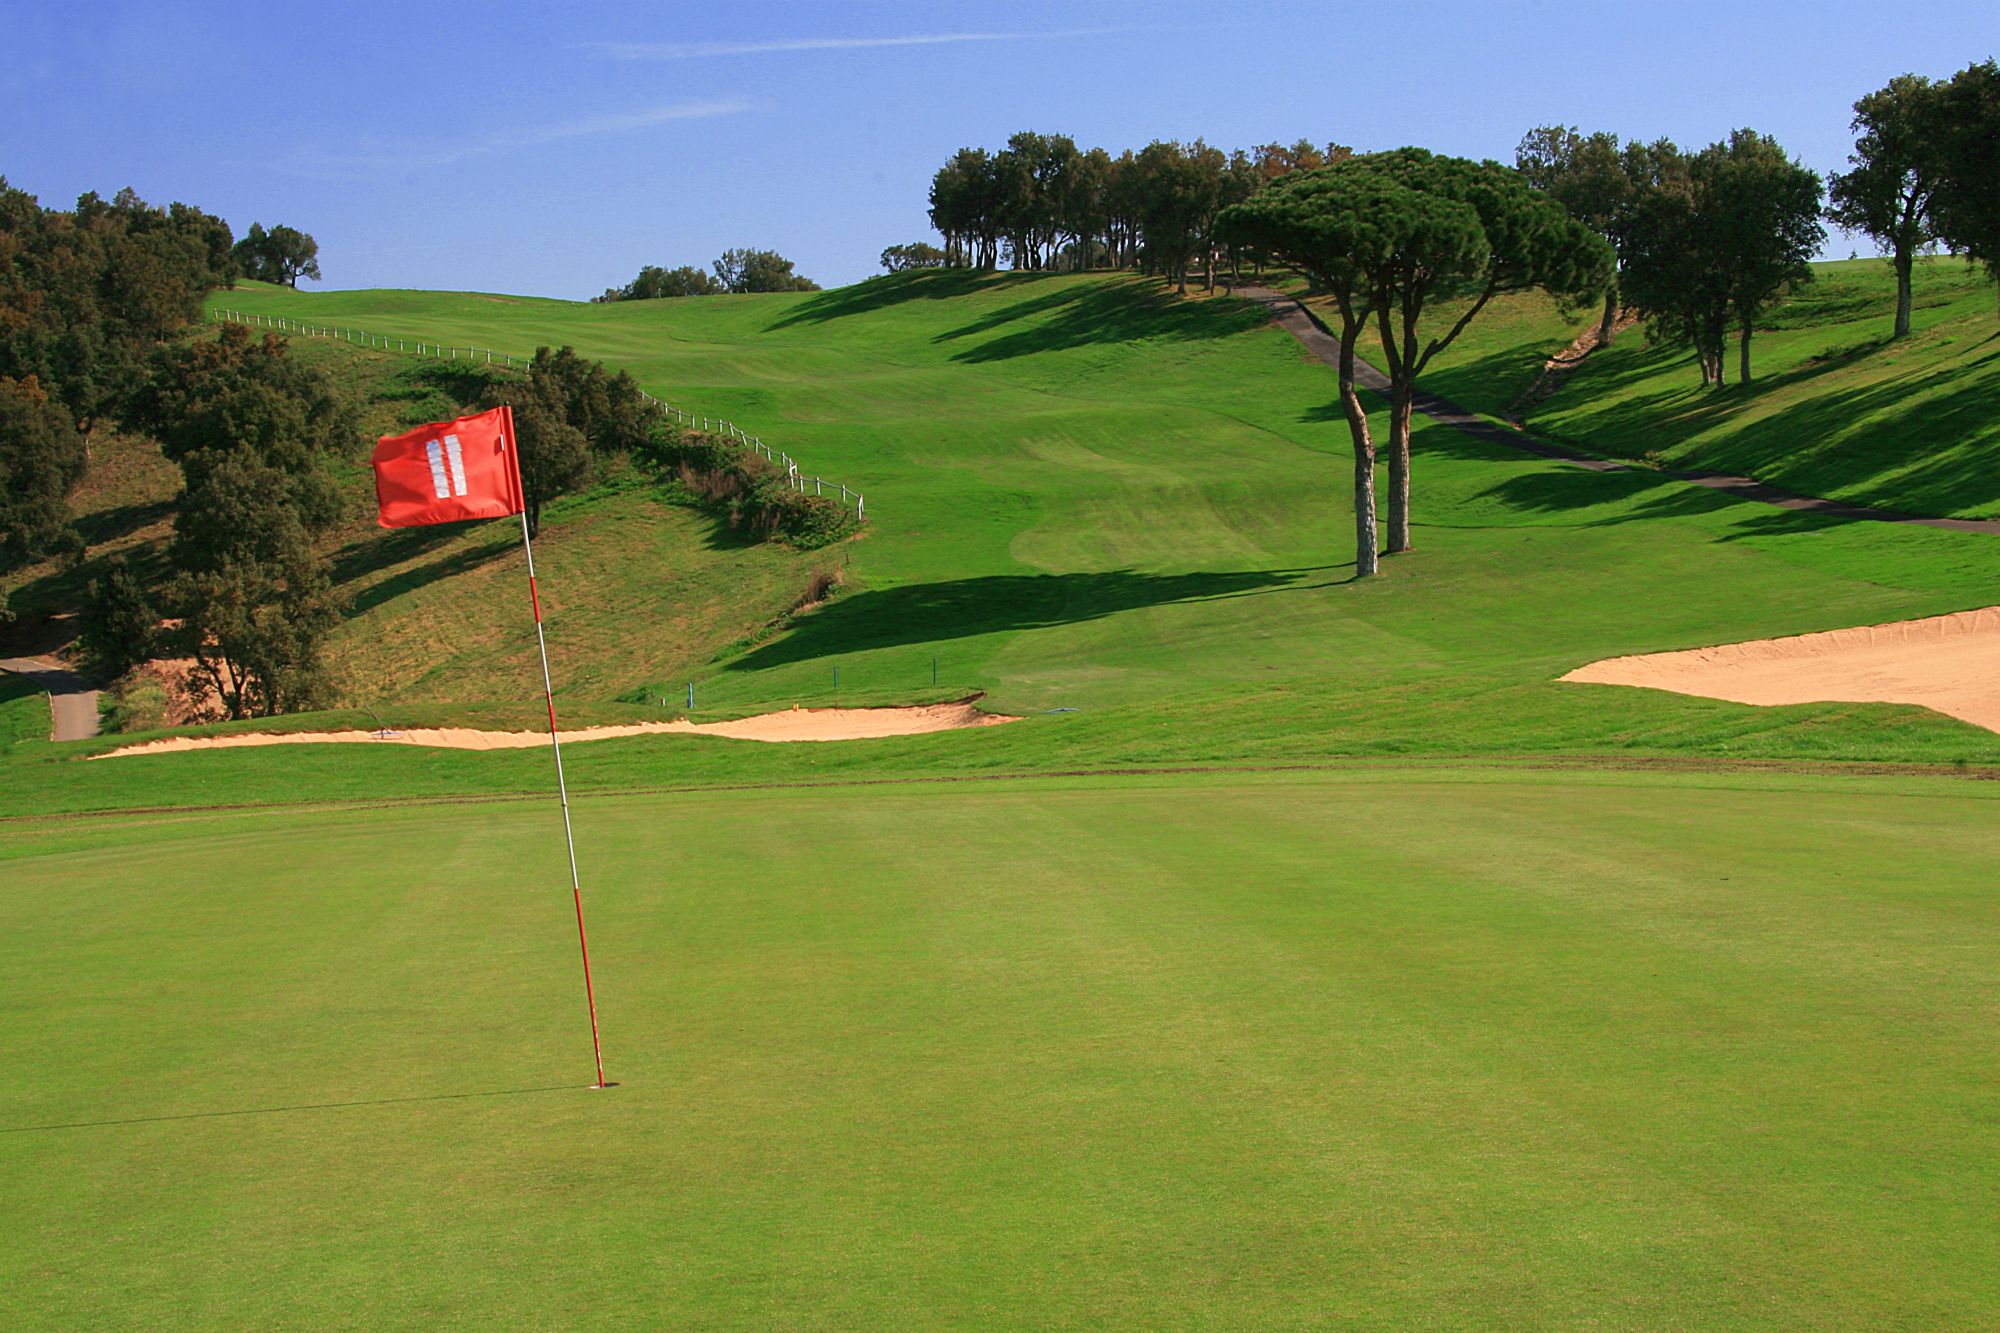 golf-expedition-golf-reizen-frankrijk-regio-cote-d'azur-hotel-le-catalogne-golfbaan-gelegen-in-natuurlijke-omgeving-green